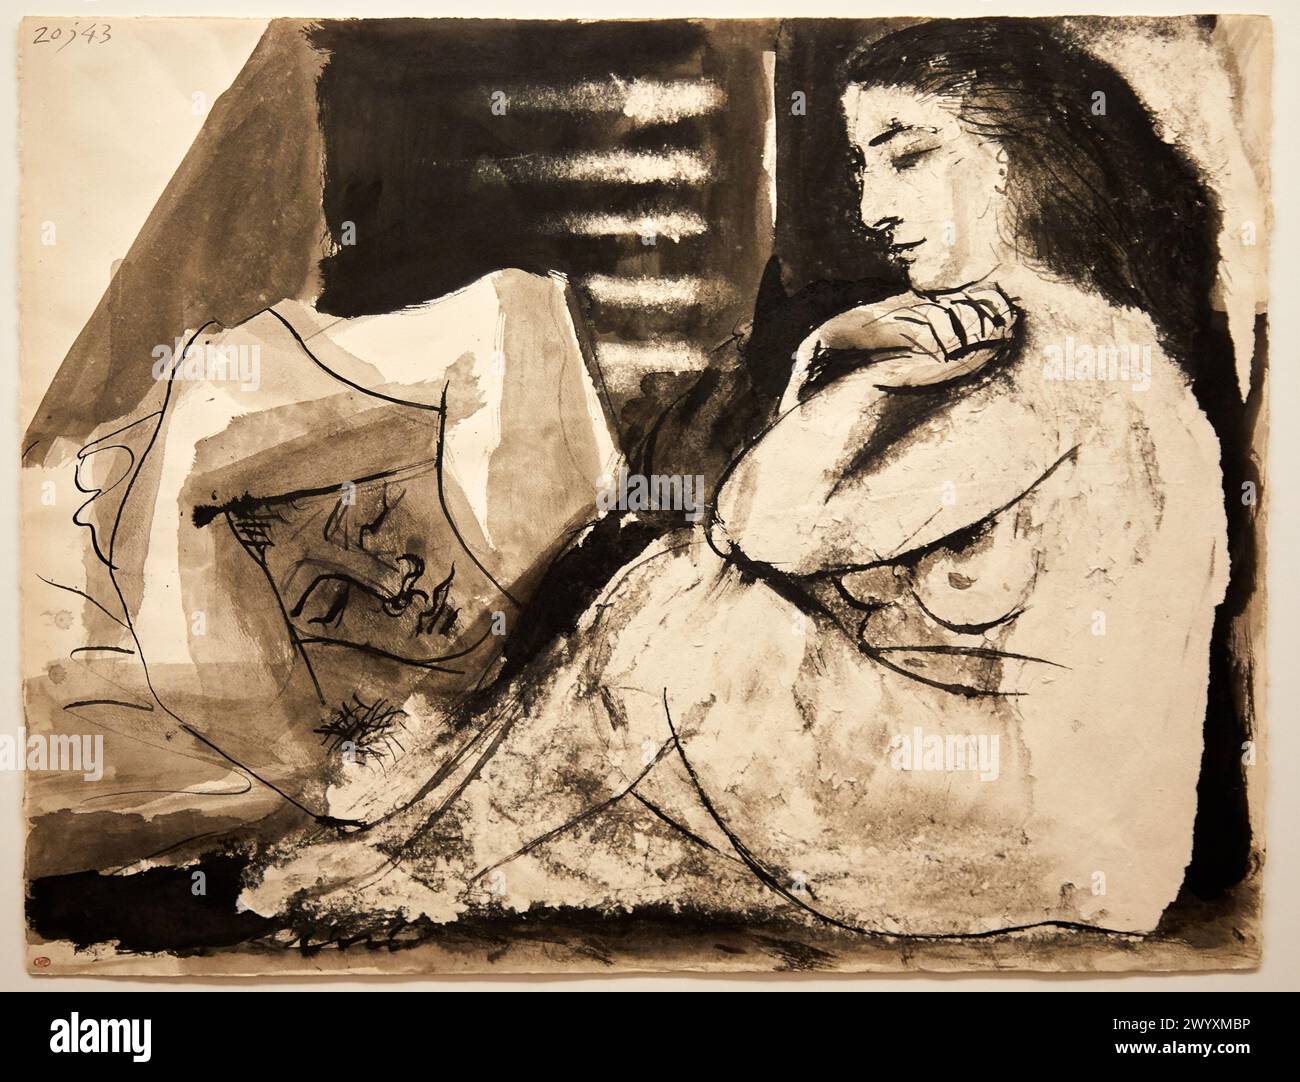 "Femme nue assise contemplant un homme endormi", 1943, Pablo Picasso, Picasso Museum, Paris, Frankreich, Europa. Stockfoto